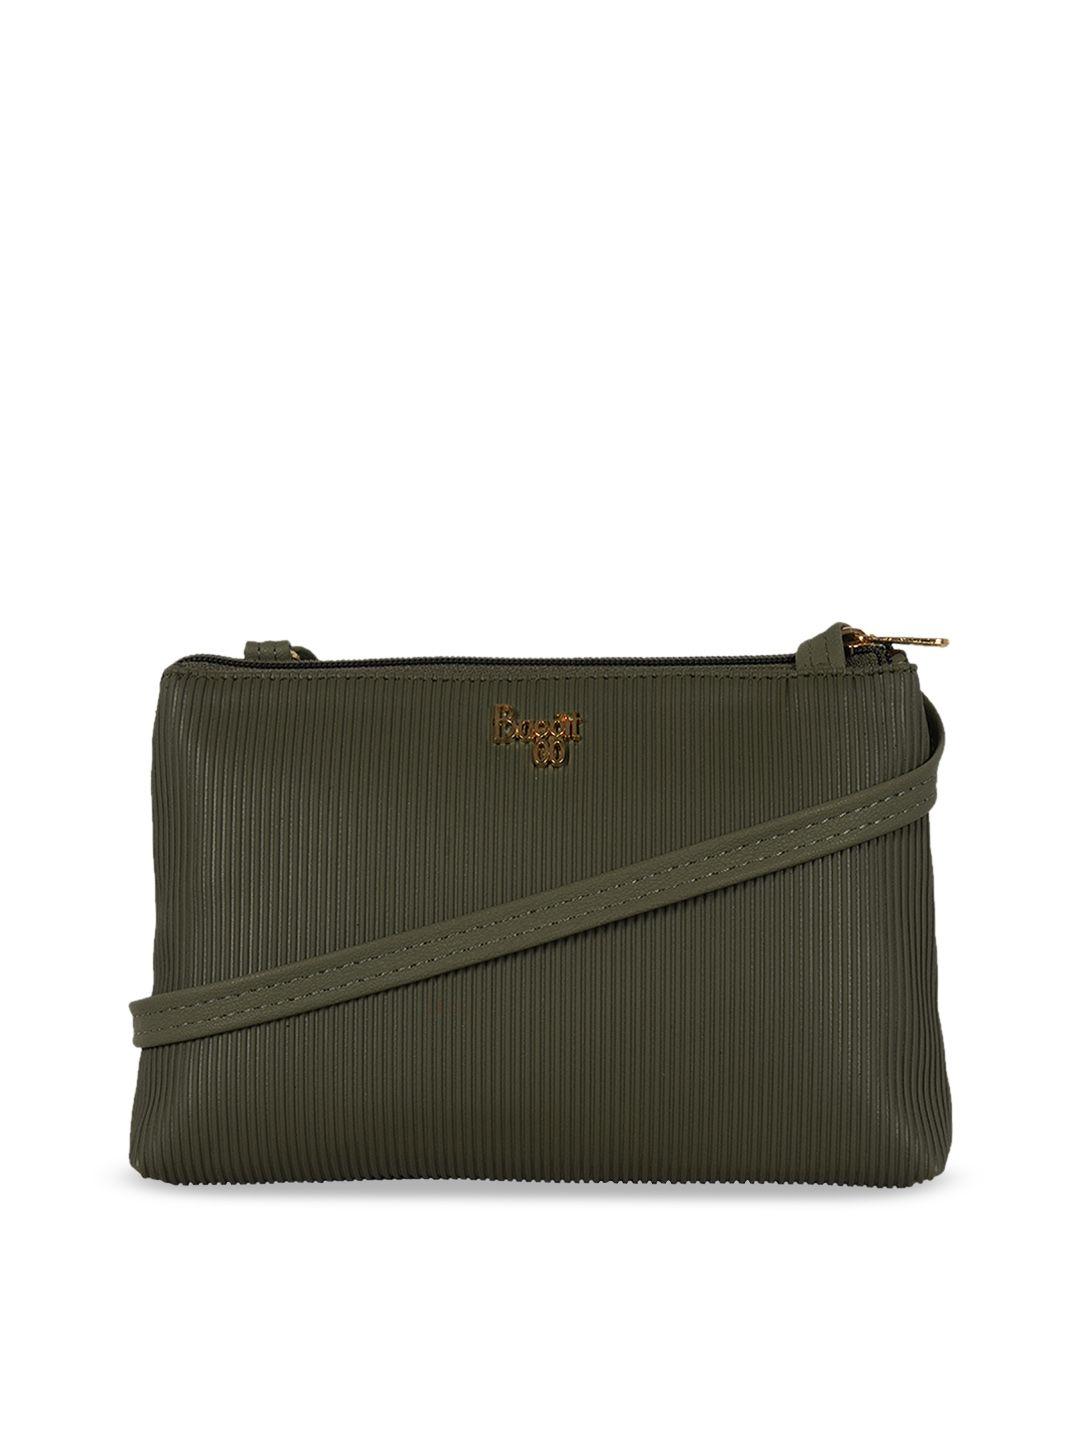 baggit olive green structured sling bag